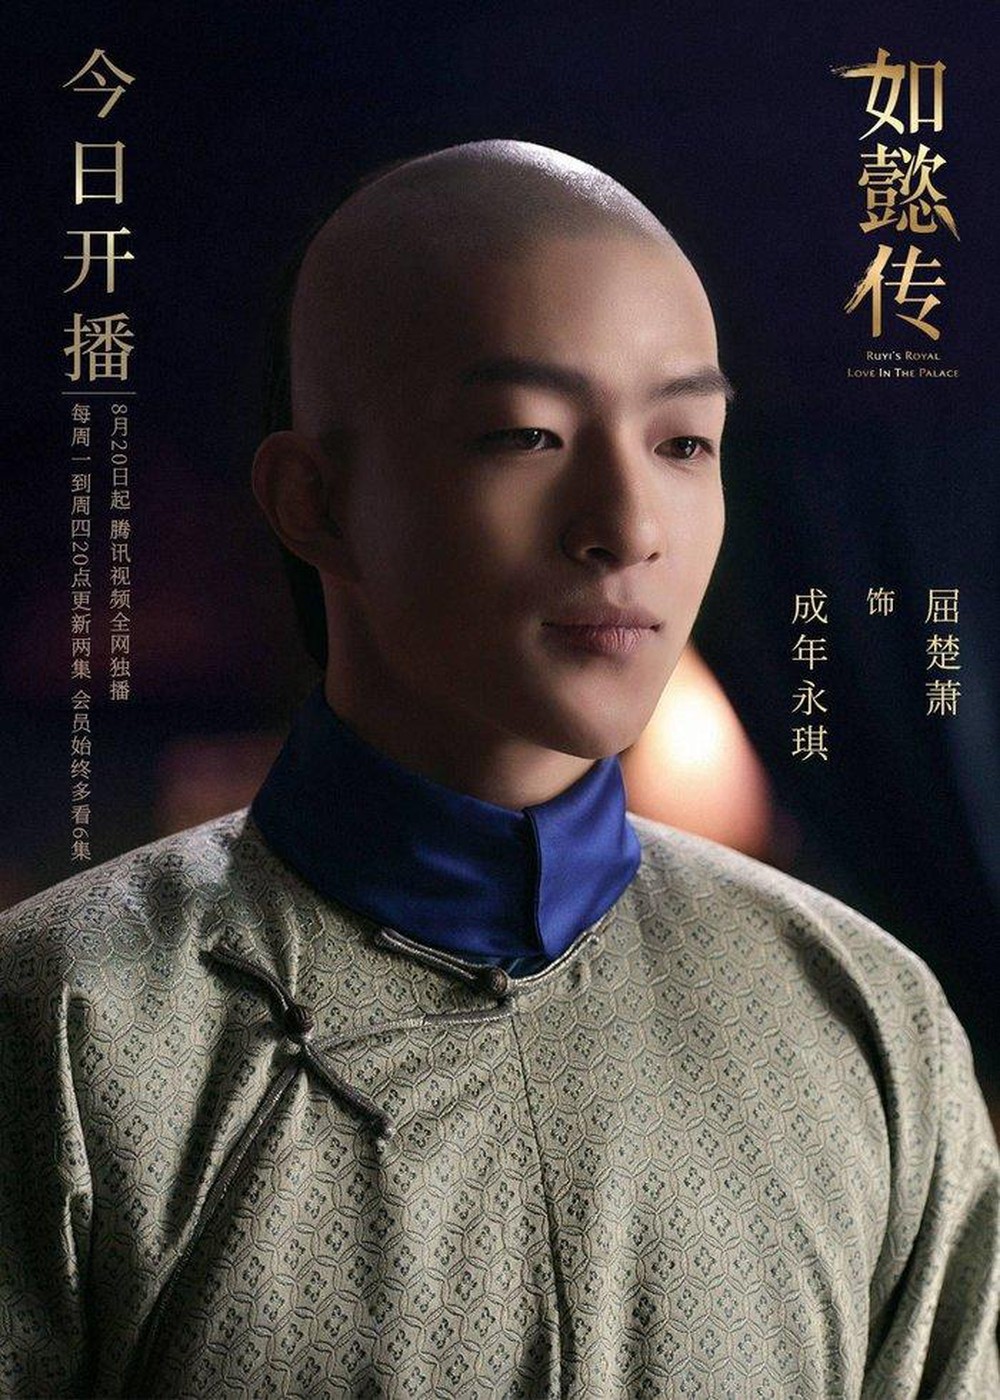  
Khuất Sở Tiêu nổi tiếng hơn nhờ vai Ngũ A ca trong Như Ý Truyện nhưng nay sự nghiệp của anh gặp nguy vì scandal. (Ảnh: Weibo).